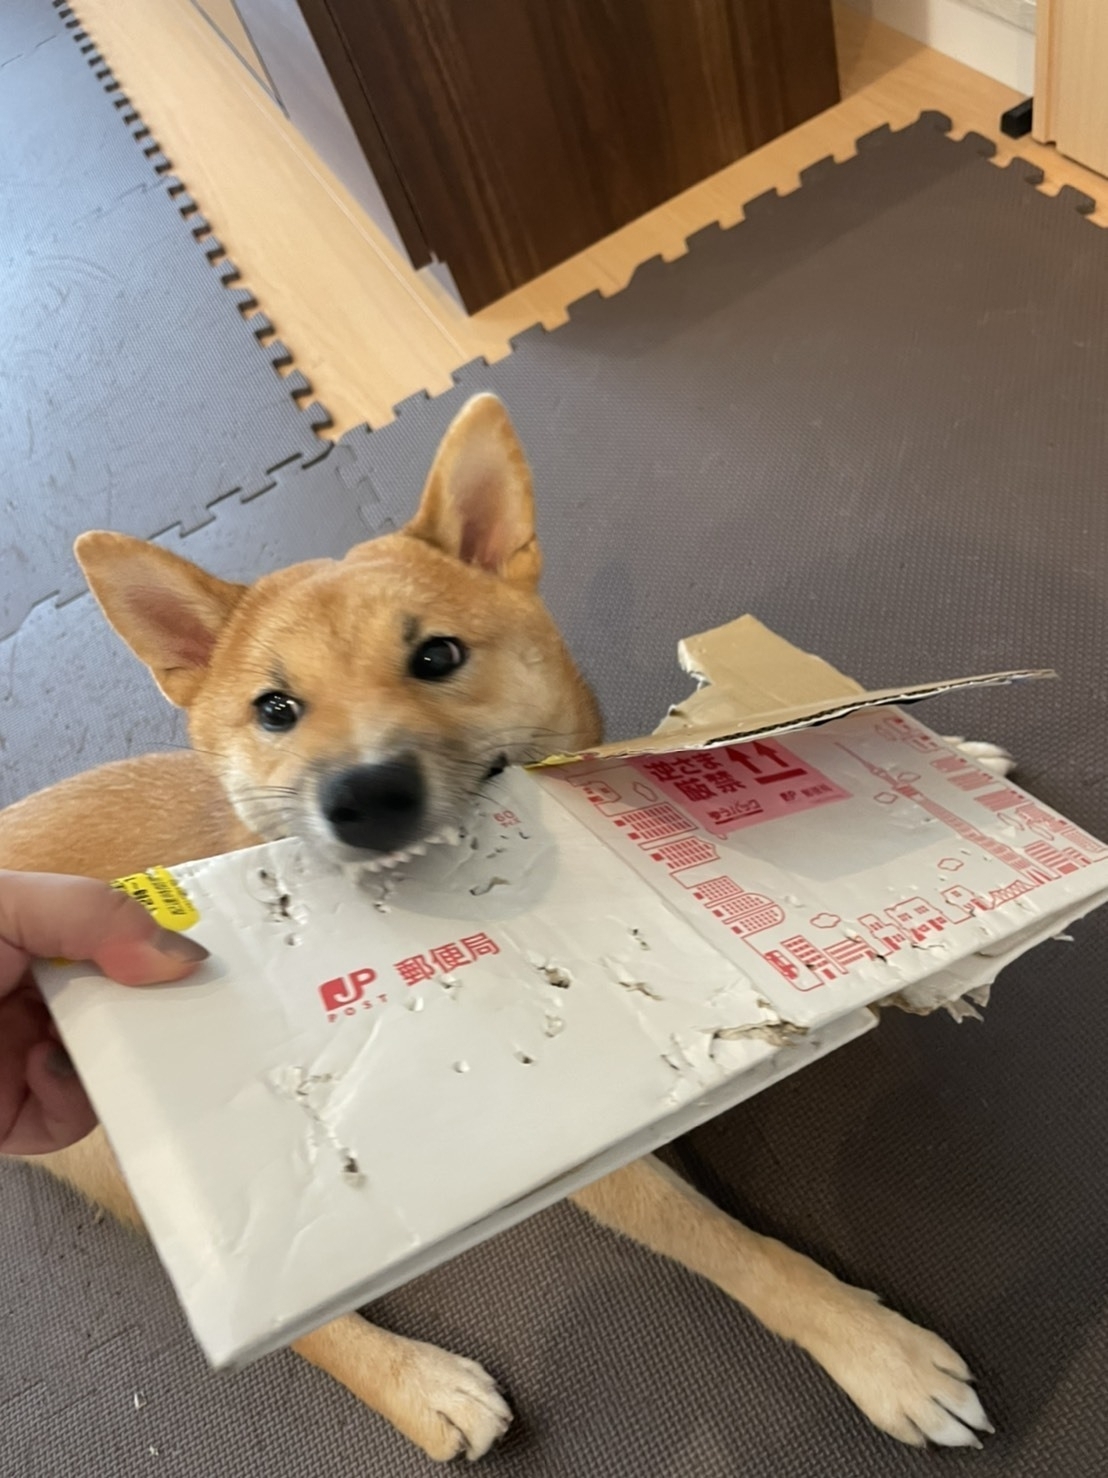 Dog biting a cardboard box